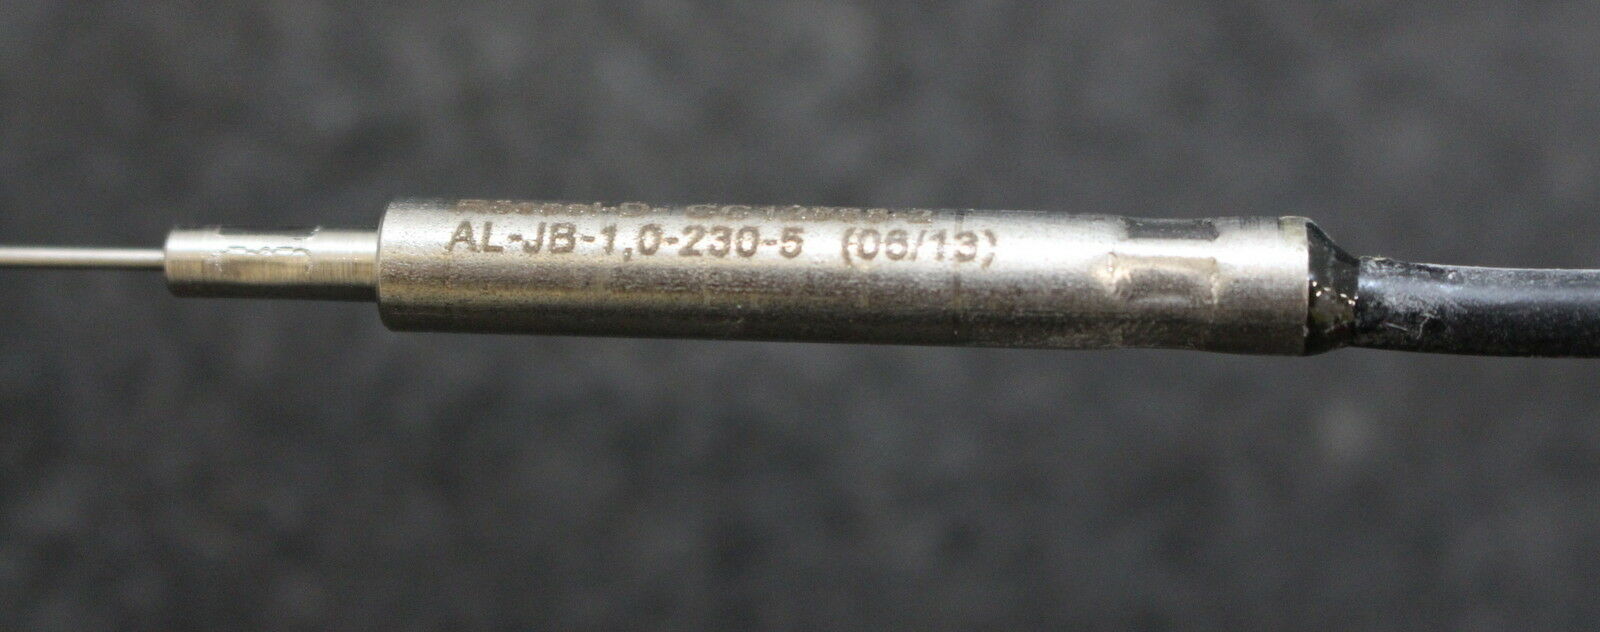 RÖSSEL Messwertumformer Mantel-Thermoelement AL-JB-1,0-230-5 AL - 1 Stück